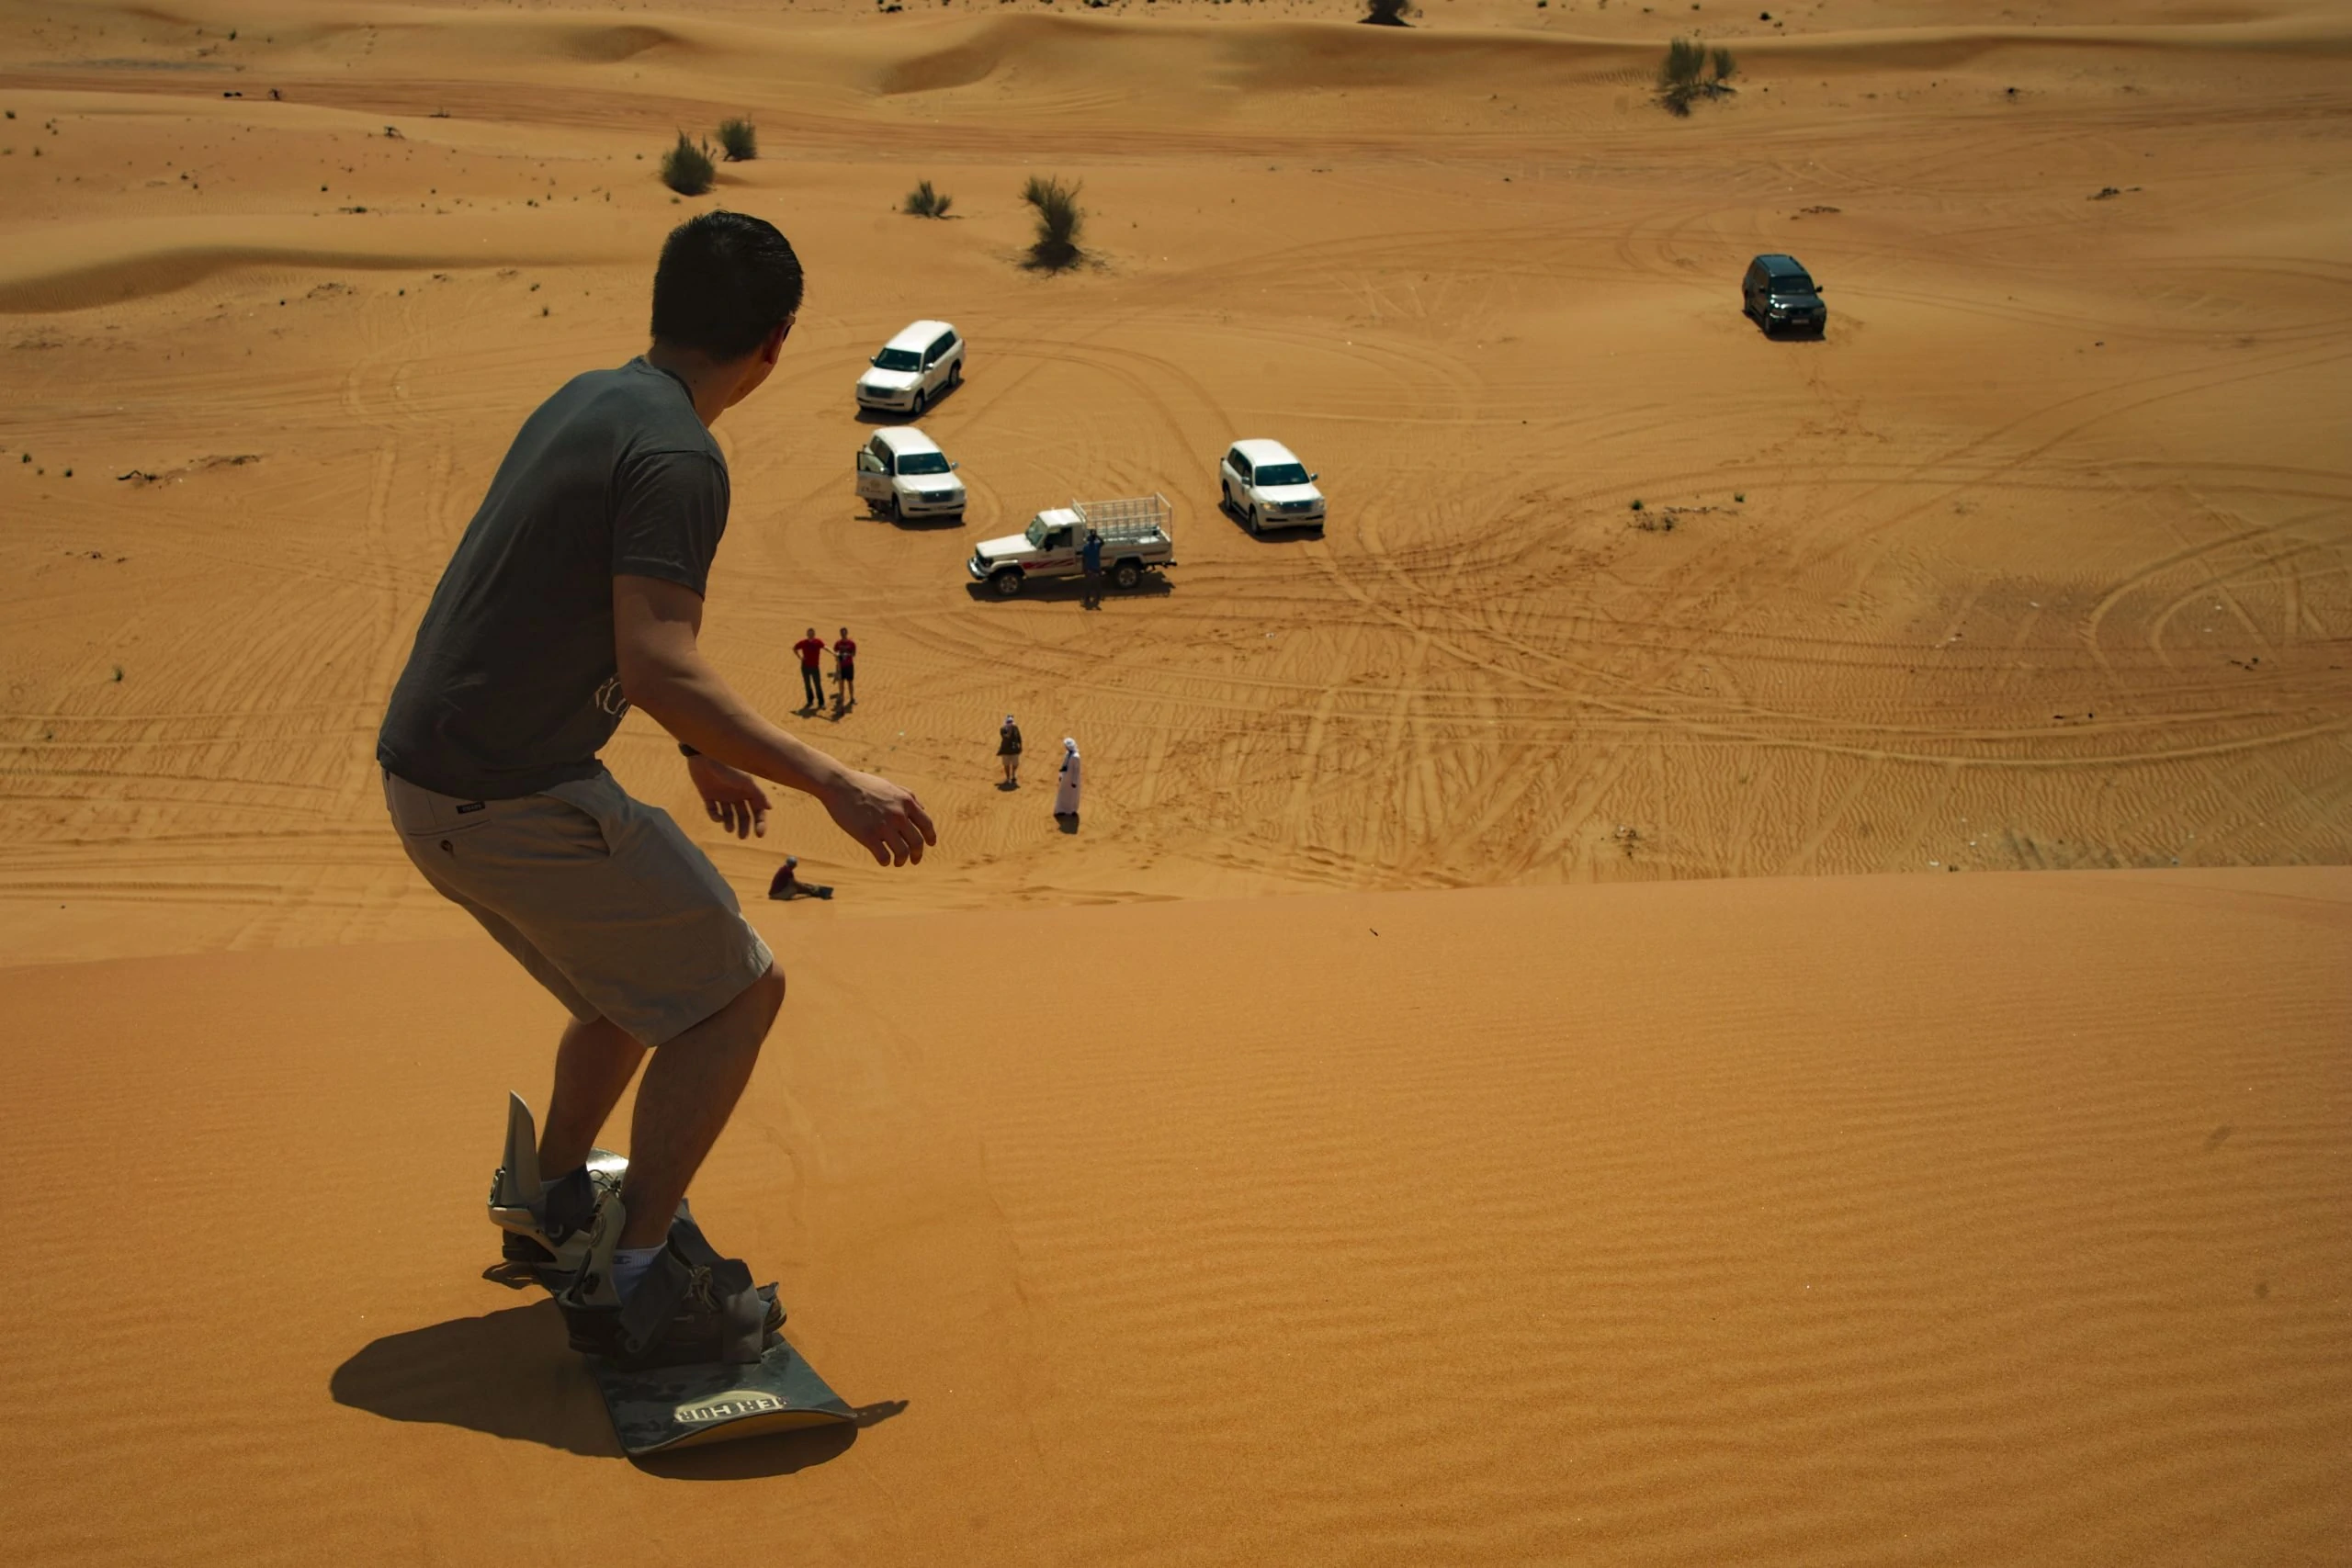 Sand surfing in the Dubai desert